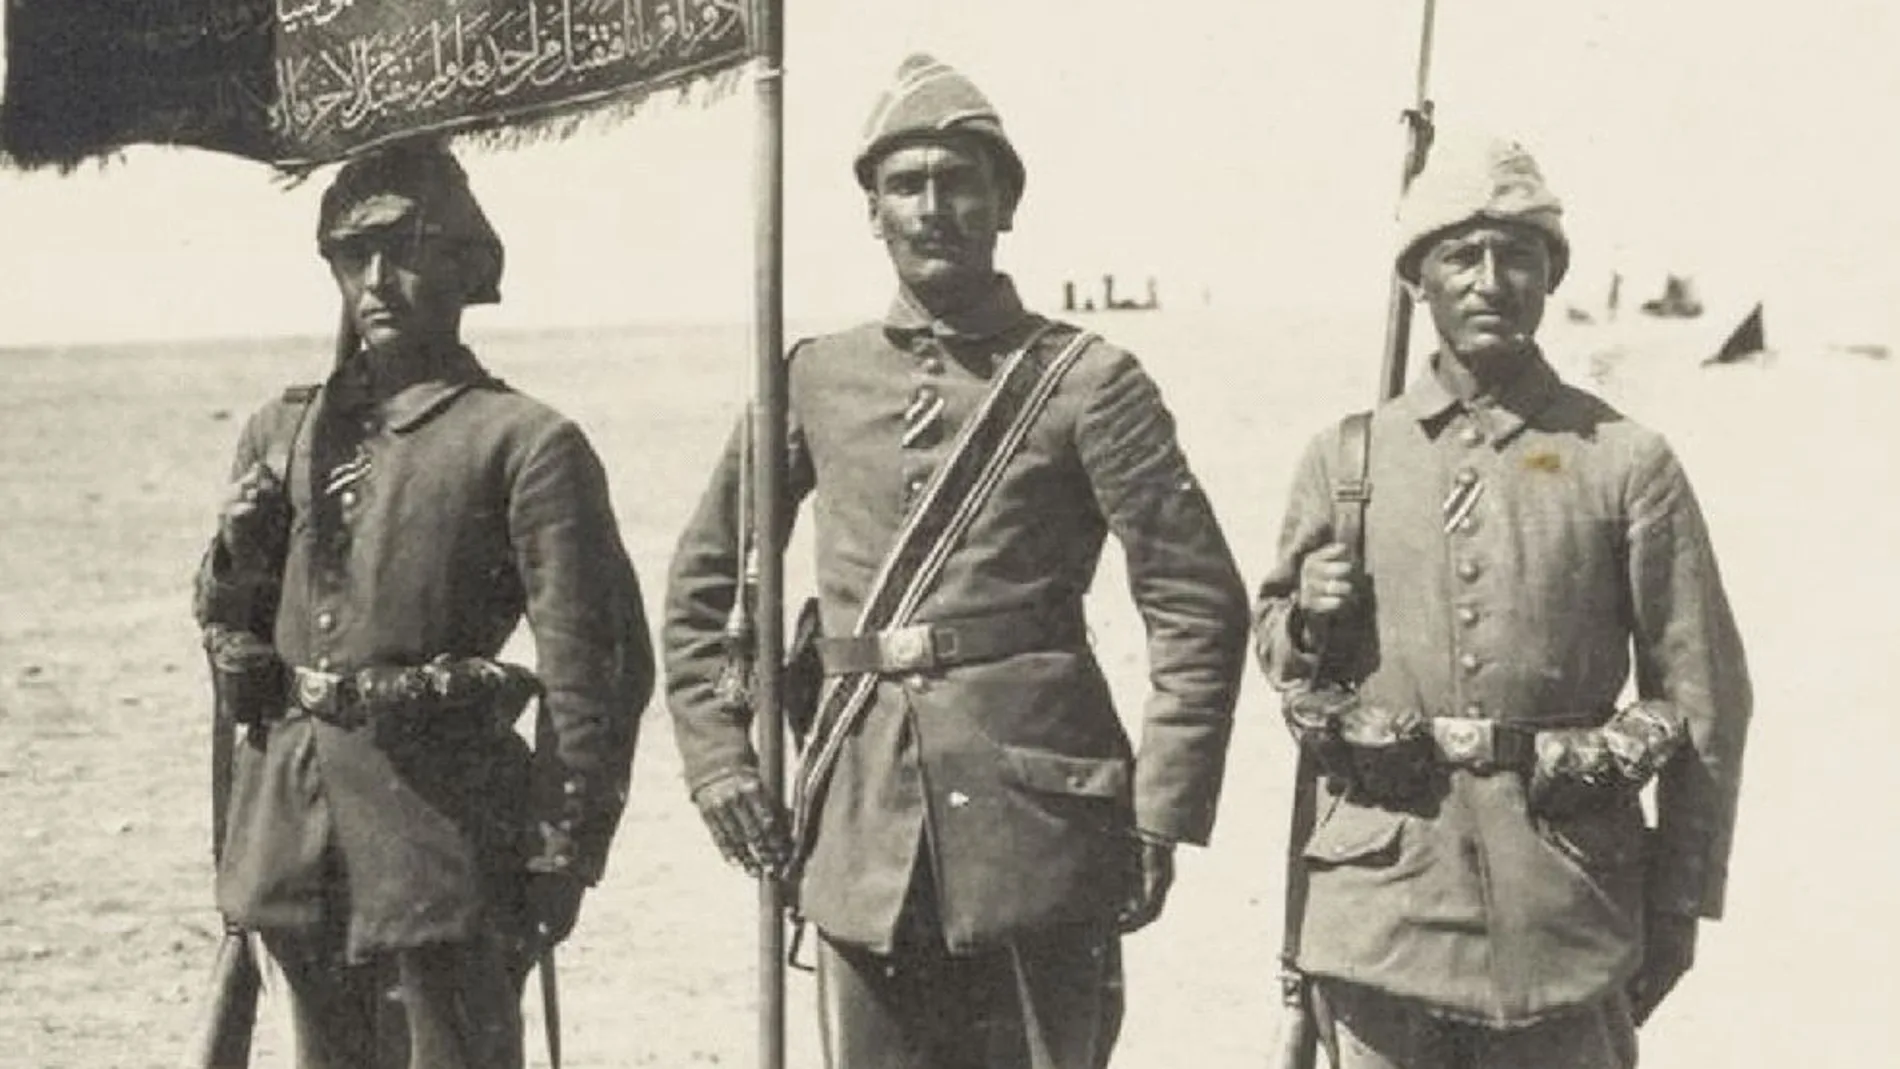 Tres soldados turcos con sus uniformes y con las banderas de su regimiento. Para Turquía no hubo paz tras 1918